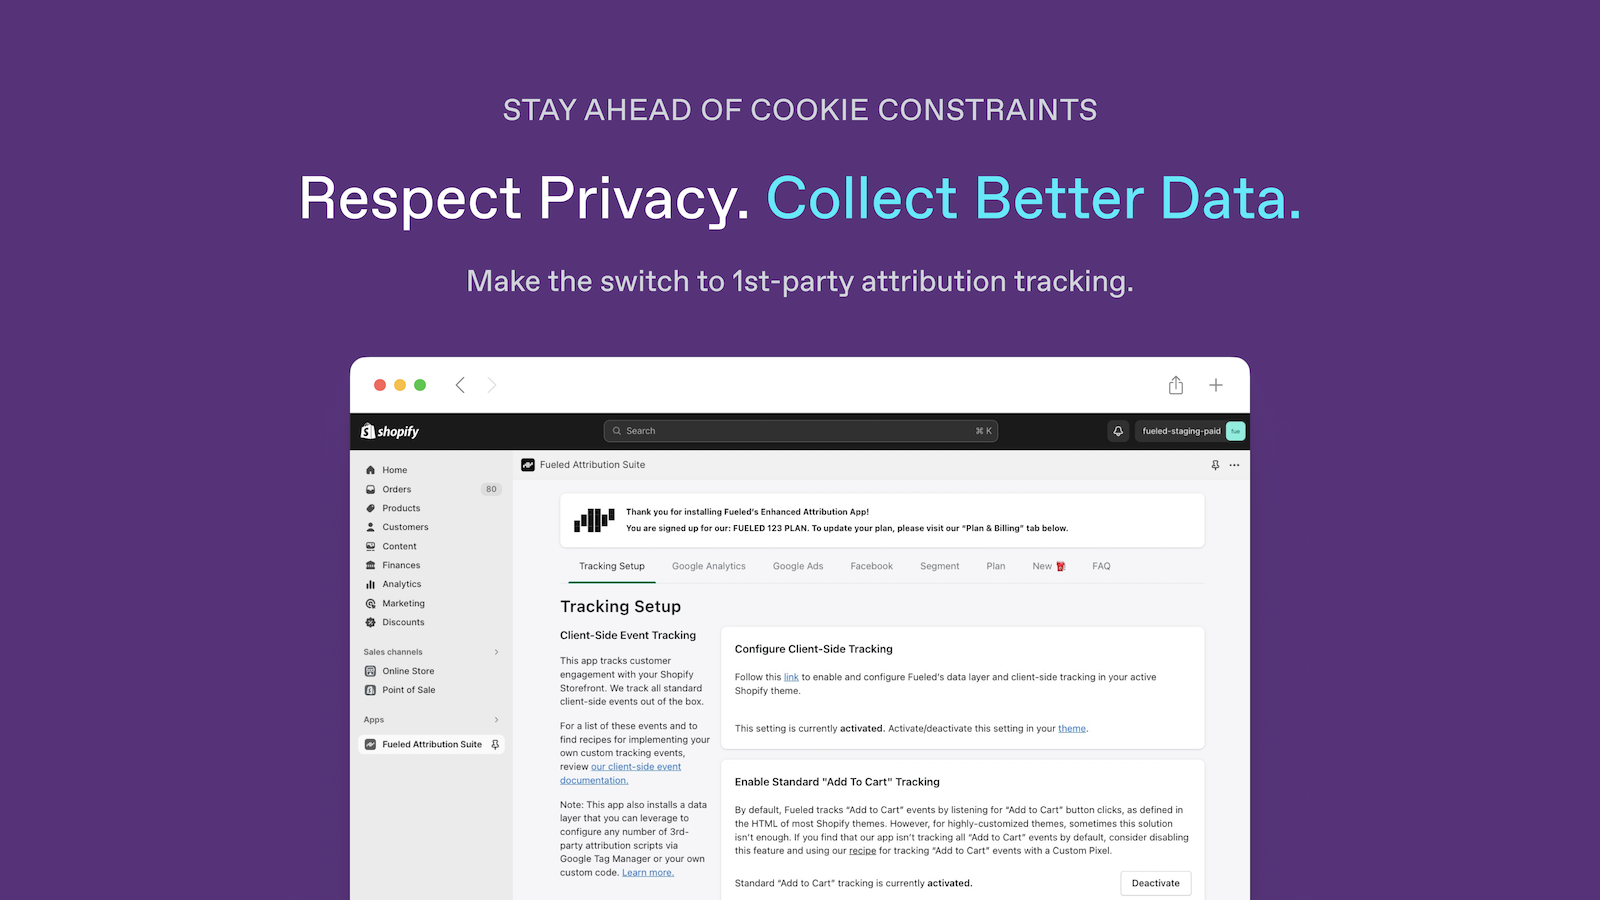 Respeite a privacidade. Colete dados melhores. Google, Facebook, Segment.